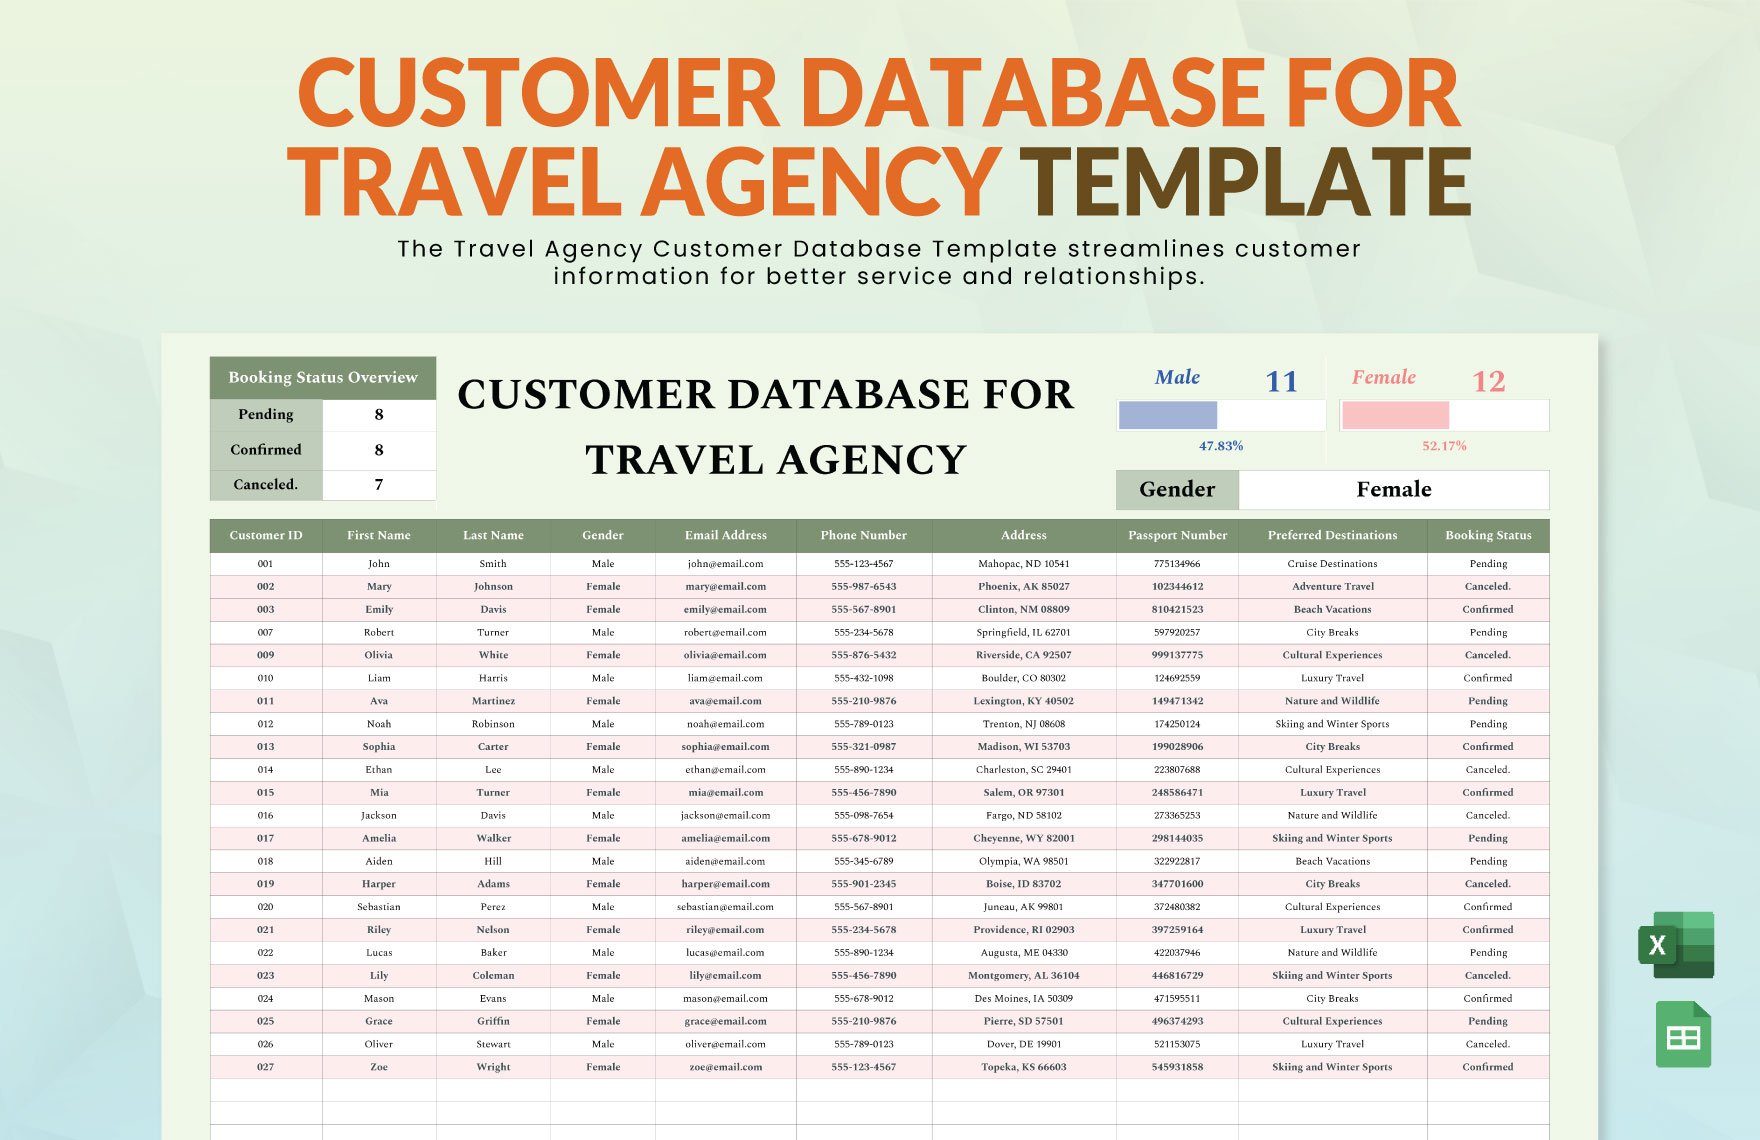 Customer Database for Travel Agency Template